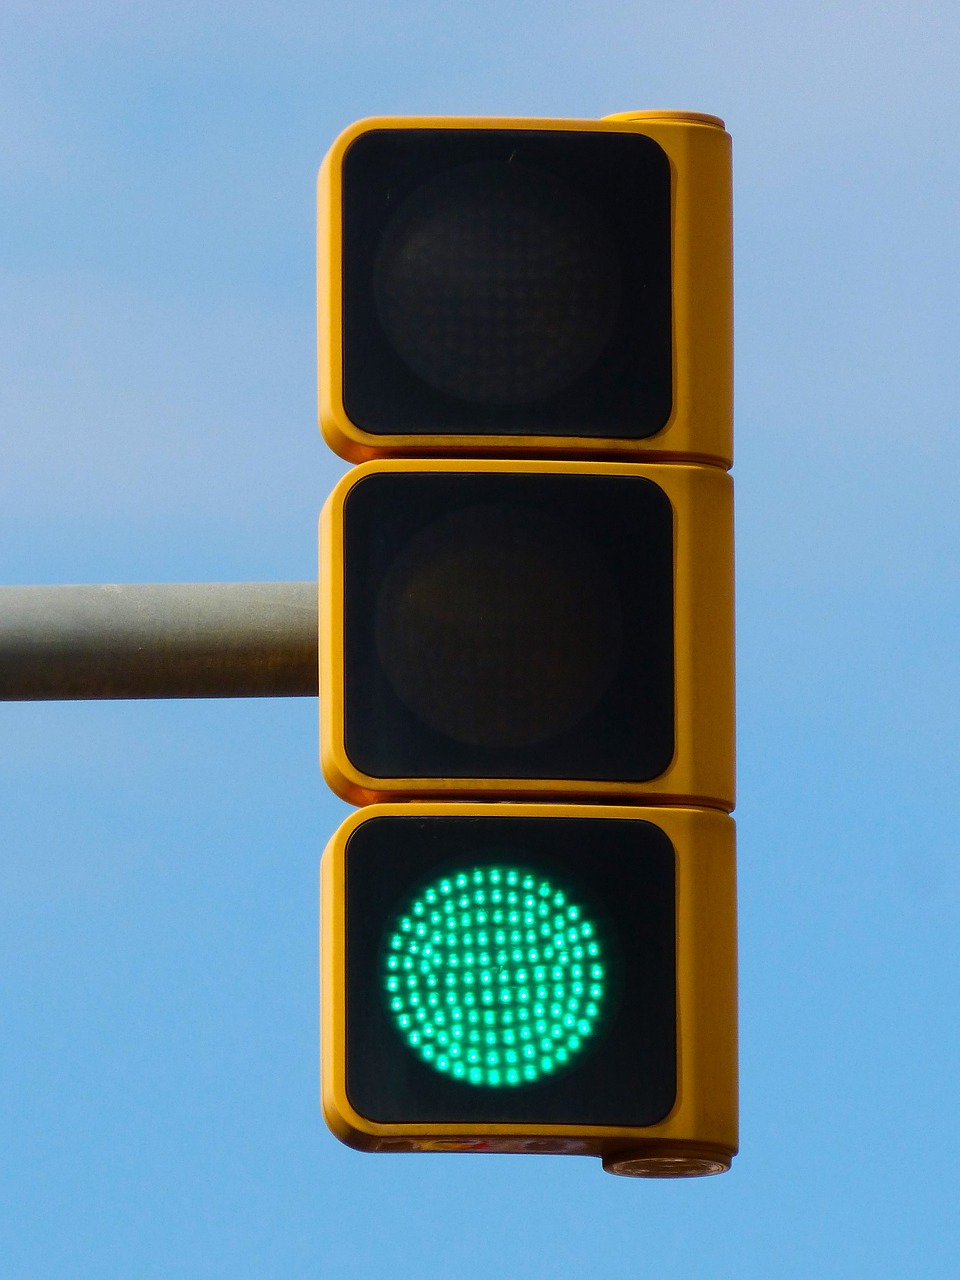 green traffic light pass free free photo